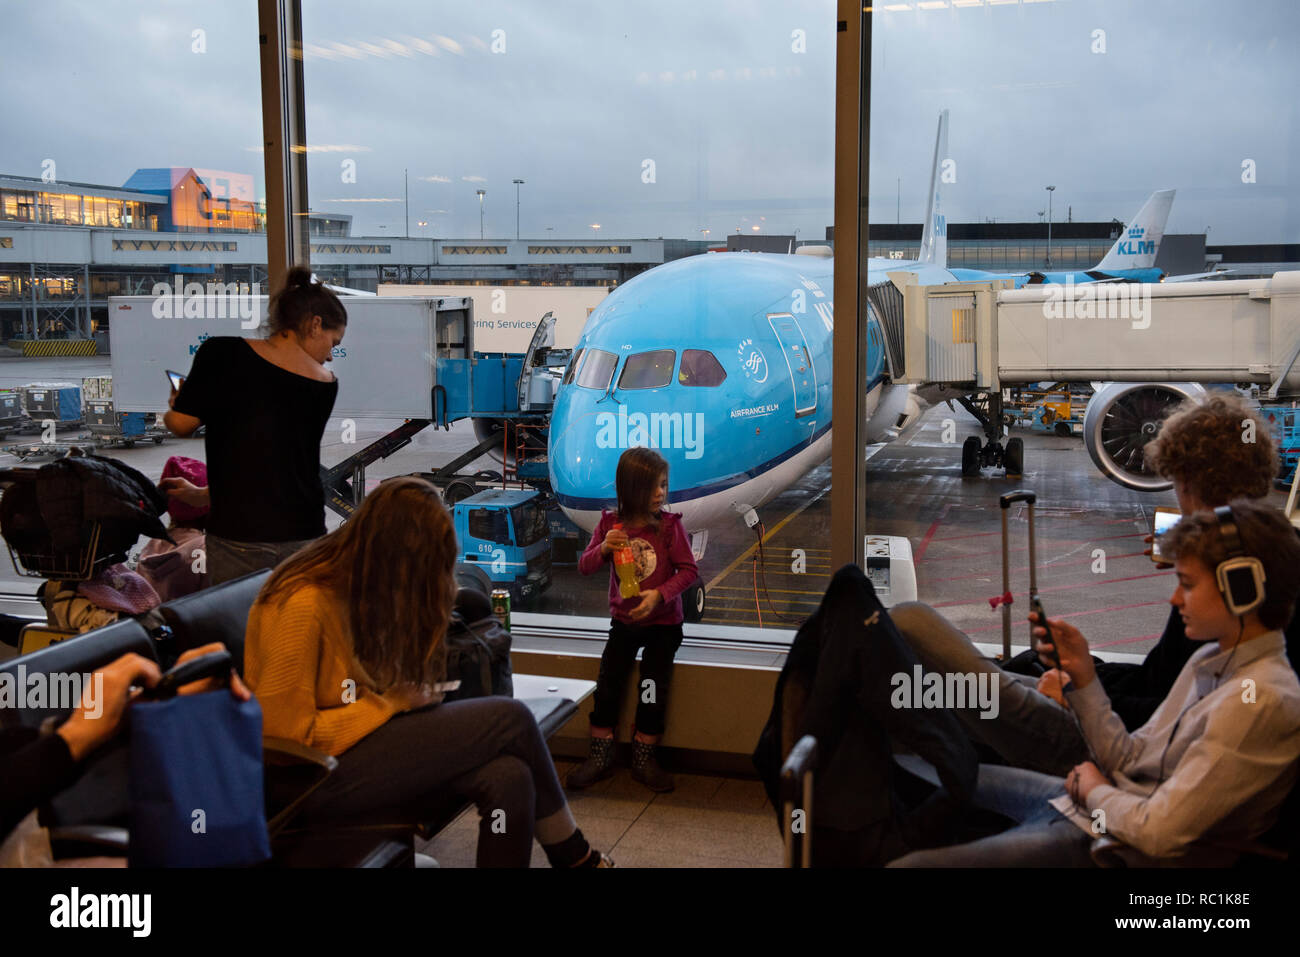 Fahrgäste im Wartebereich an einem Boarding Gate sitzen, neben einem KLM Royal Dutch Airlines Flugzeug in Amsterdam Schiphol Flughafen Landebahn. Stockfoto